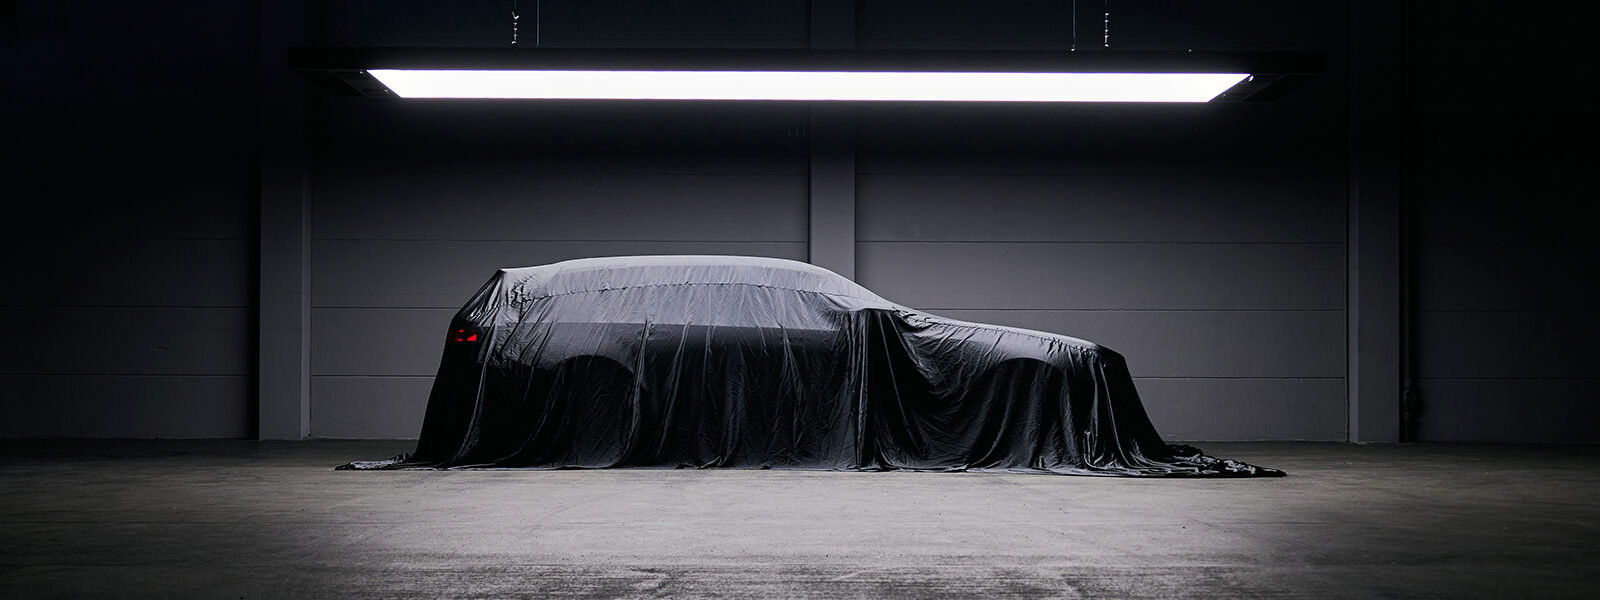 La silhouette de la future M5 Touring